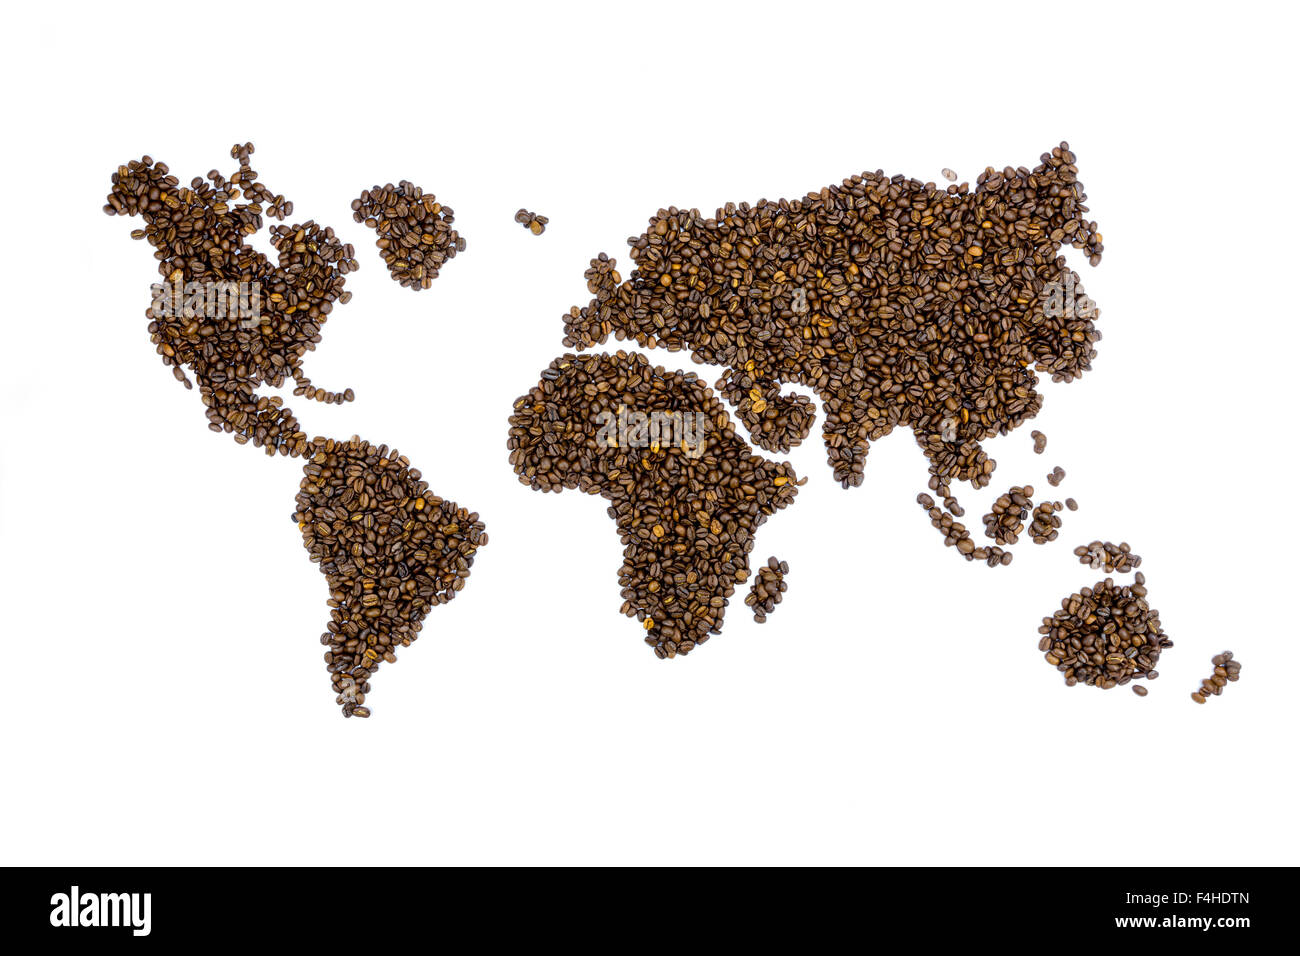 Mapa del mundo lleno de granos de café aislado sobre fondo blanco. Foto de stock